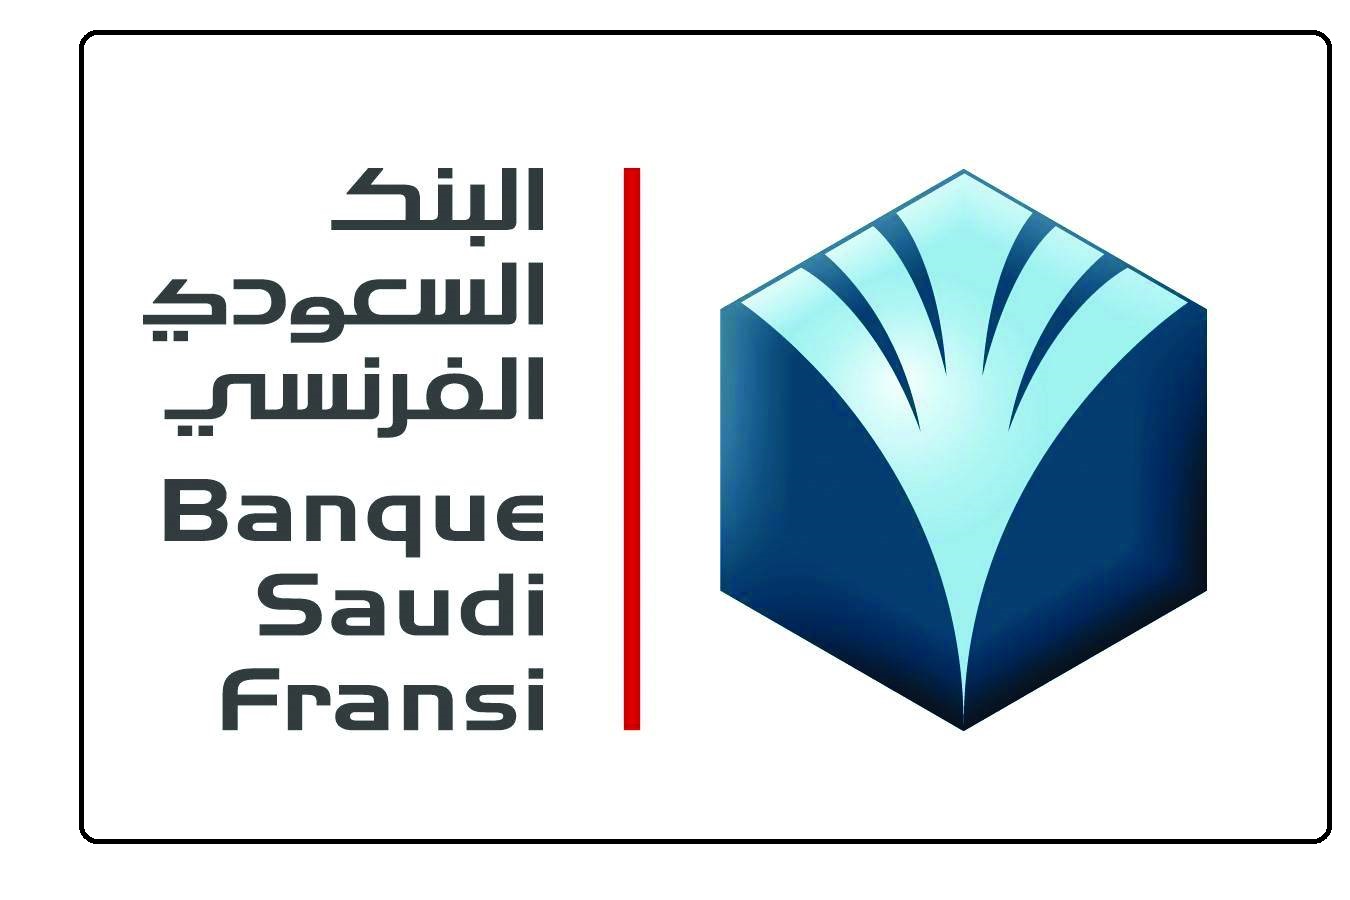 التمويل العقاري البنك السعودي الفرنسي